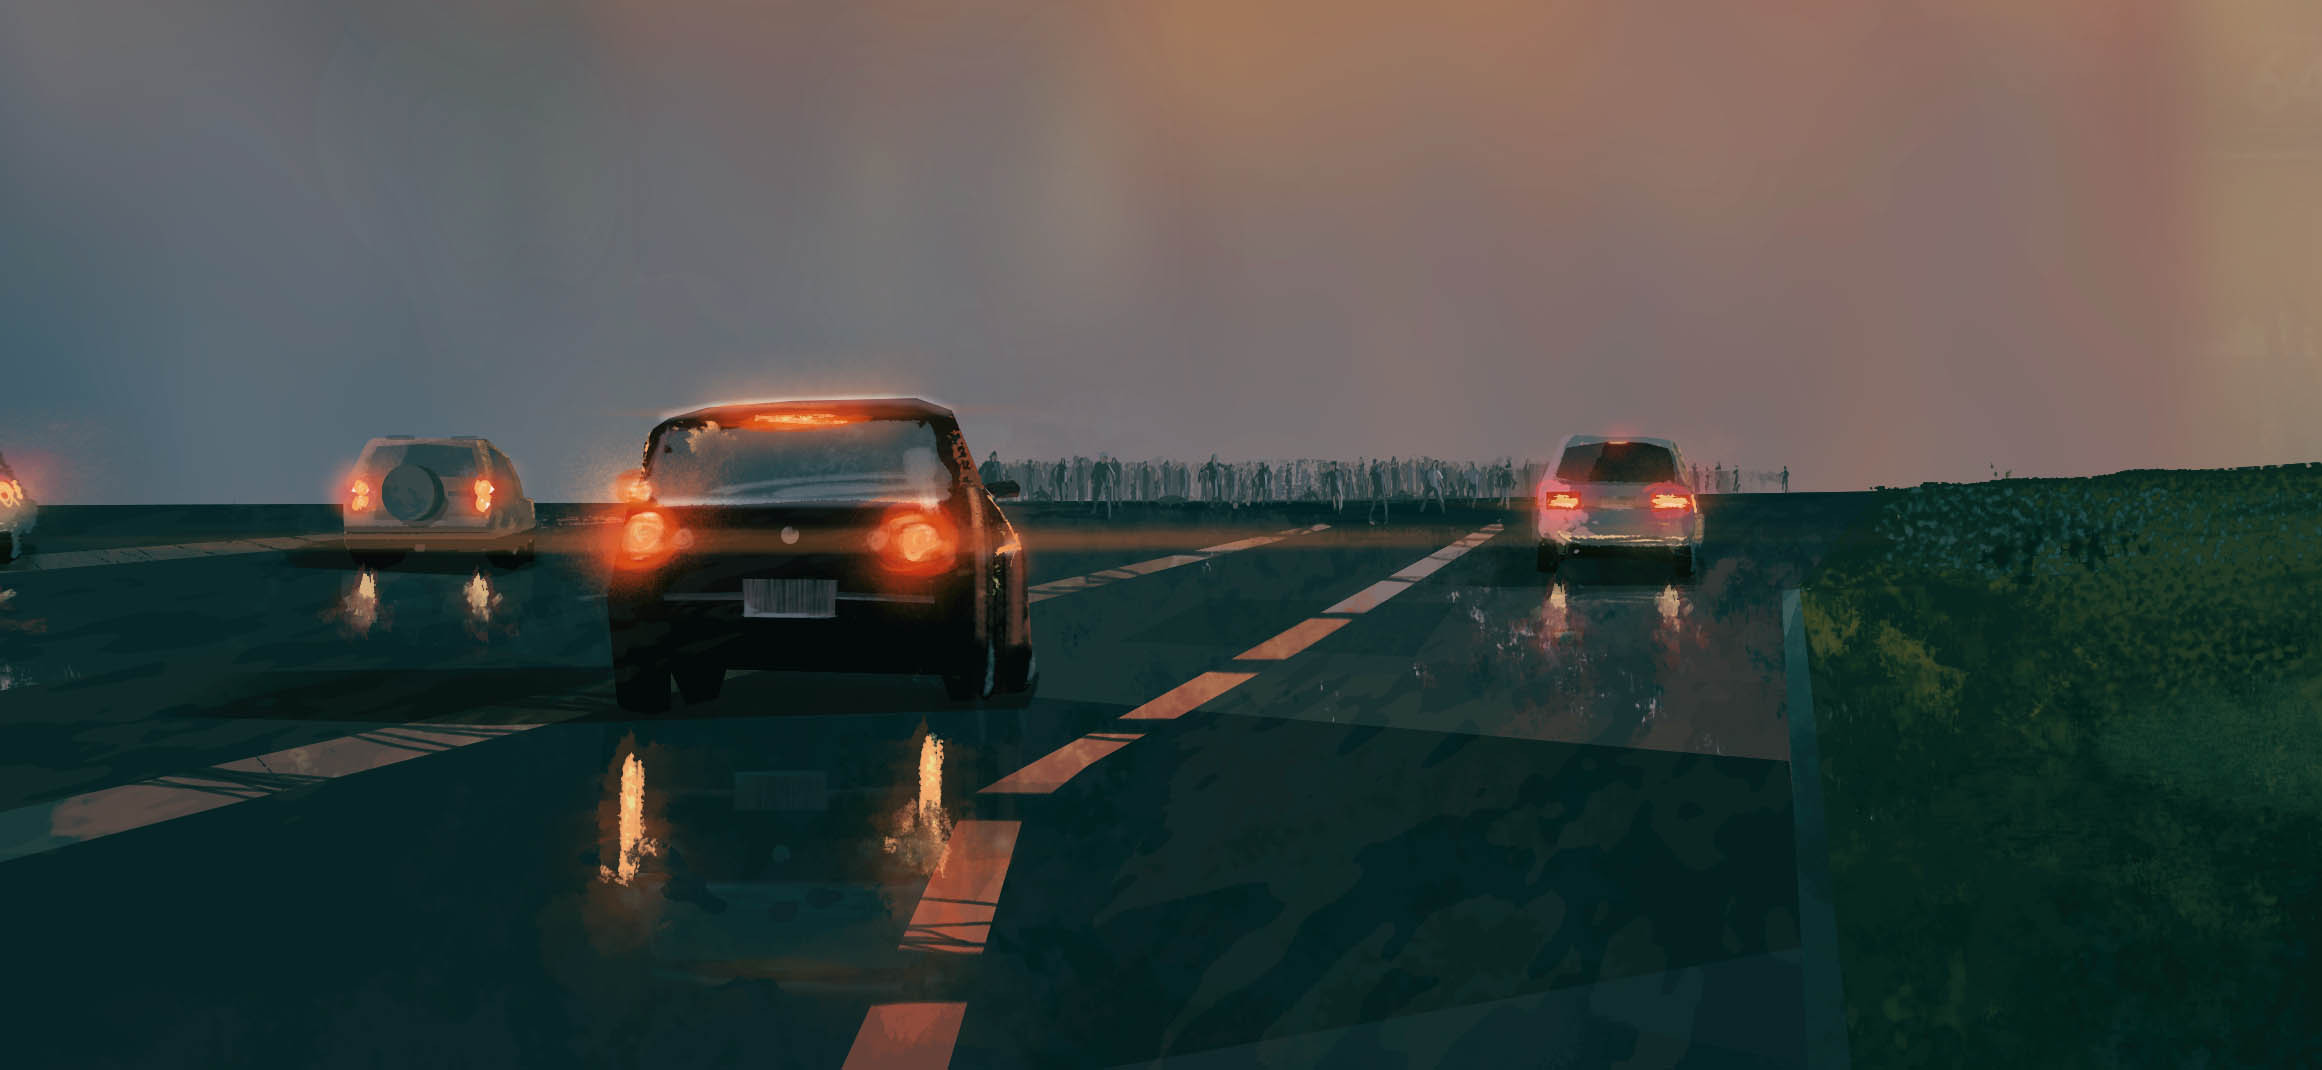 highway zombies by Karol Czechowski